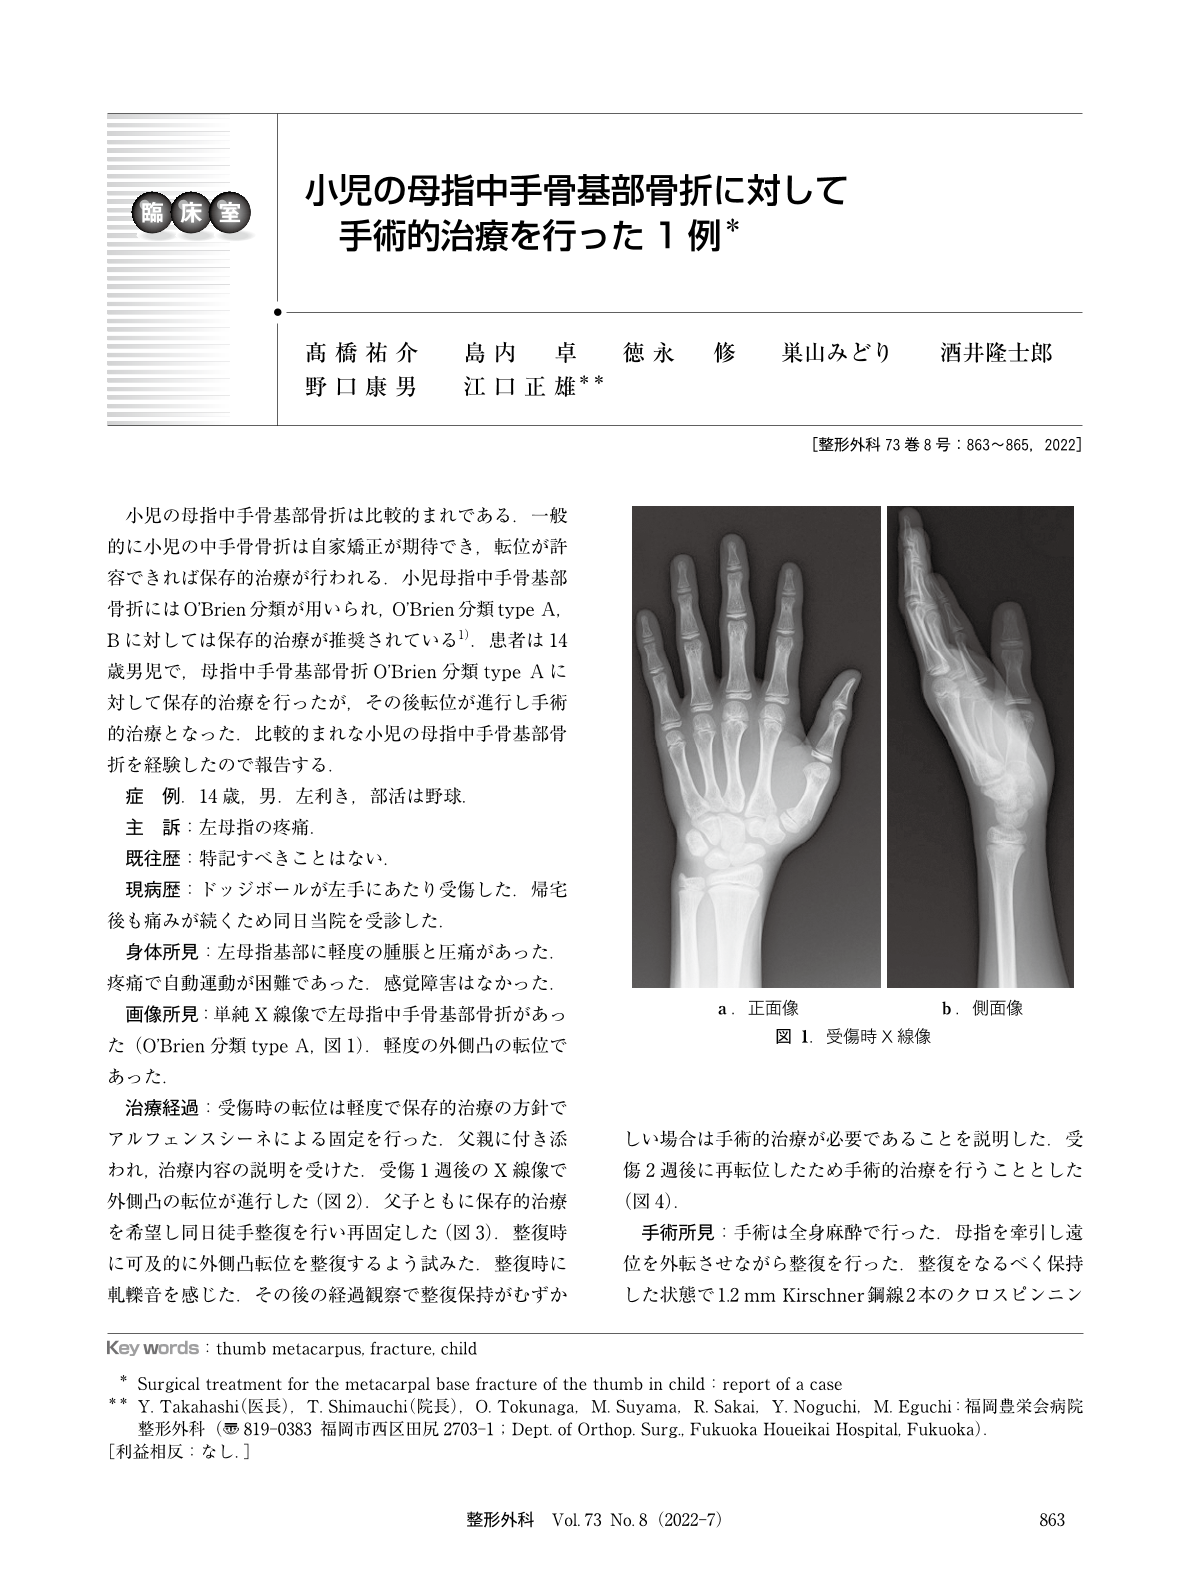 小児の母指中手骨基部骨折に対して手術的治療を行った1例 臨床雑誌